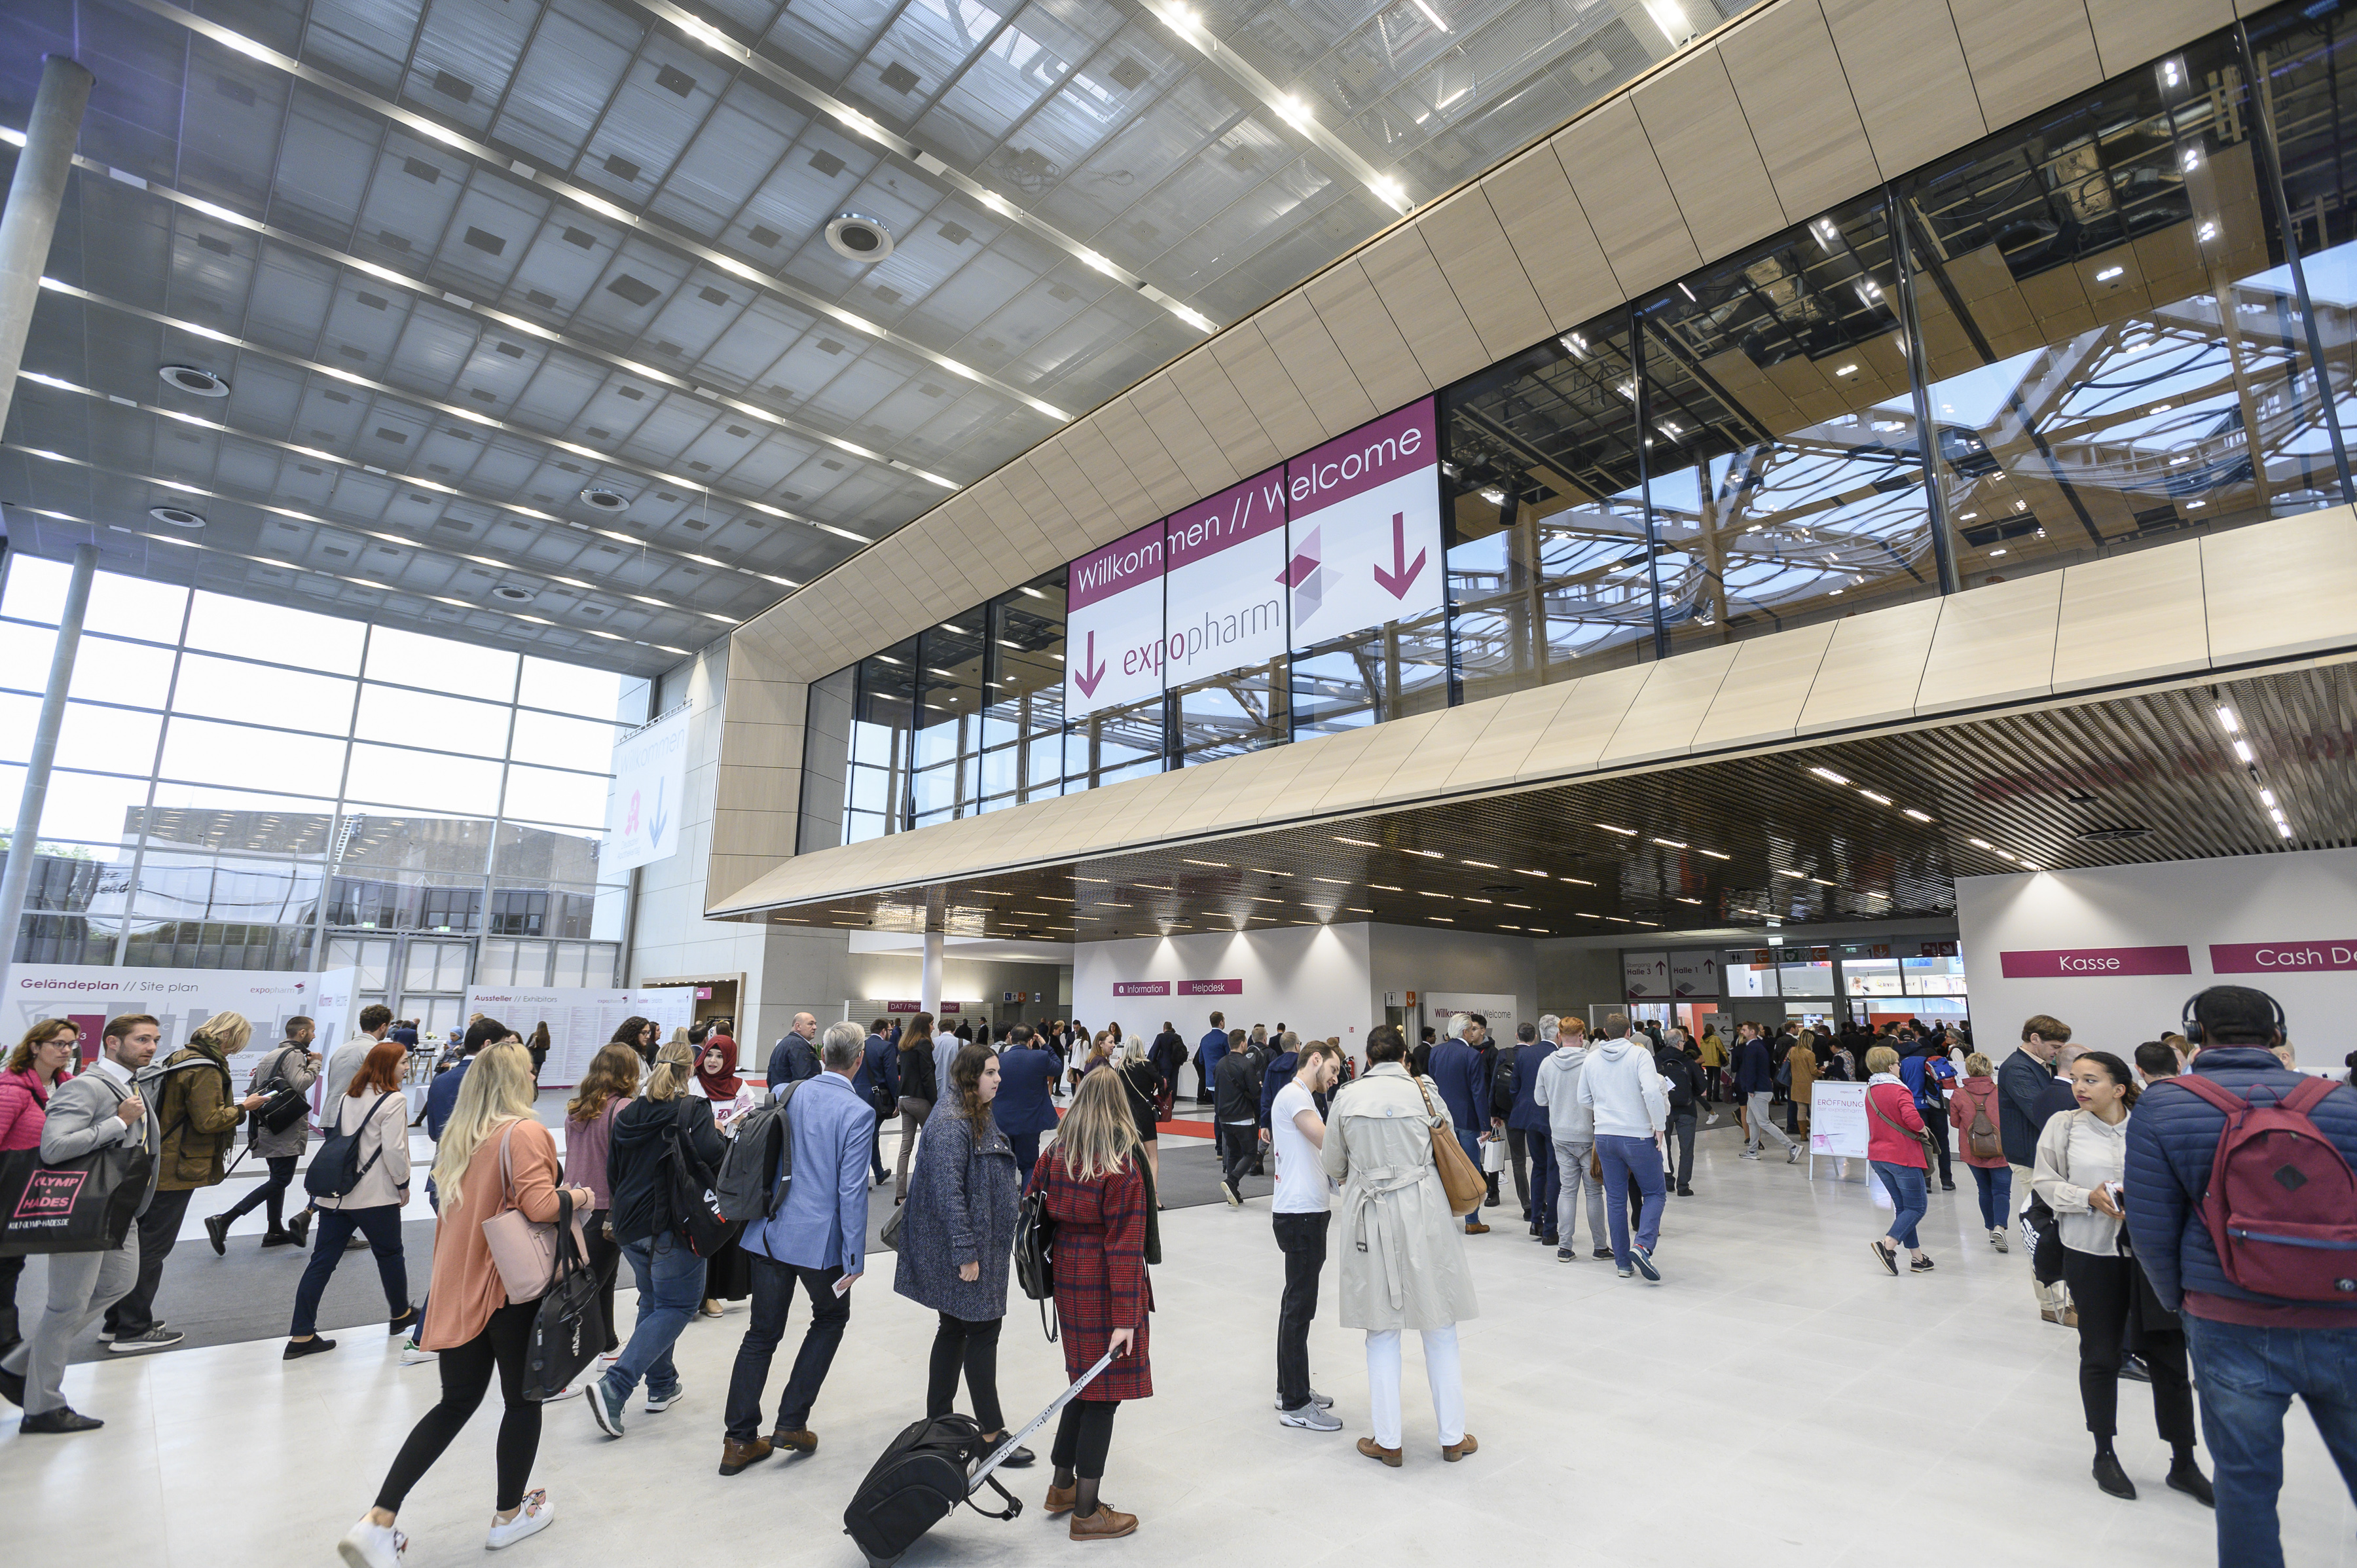 Auf dem Bild sieht man den Eingangsbereich der Messe Düsseldorf. Dort findet die expopharm 2023 statt. Im Eingangsbereich sind sehr viele Menschen, die zur expopharm gehen.